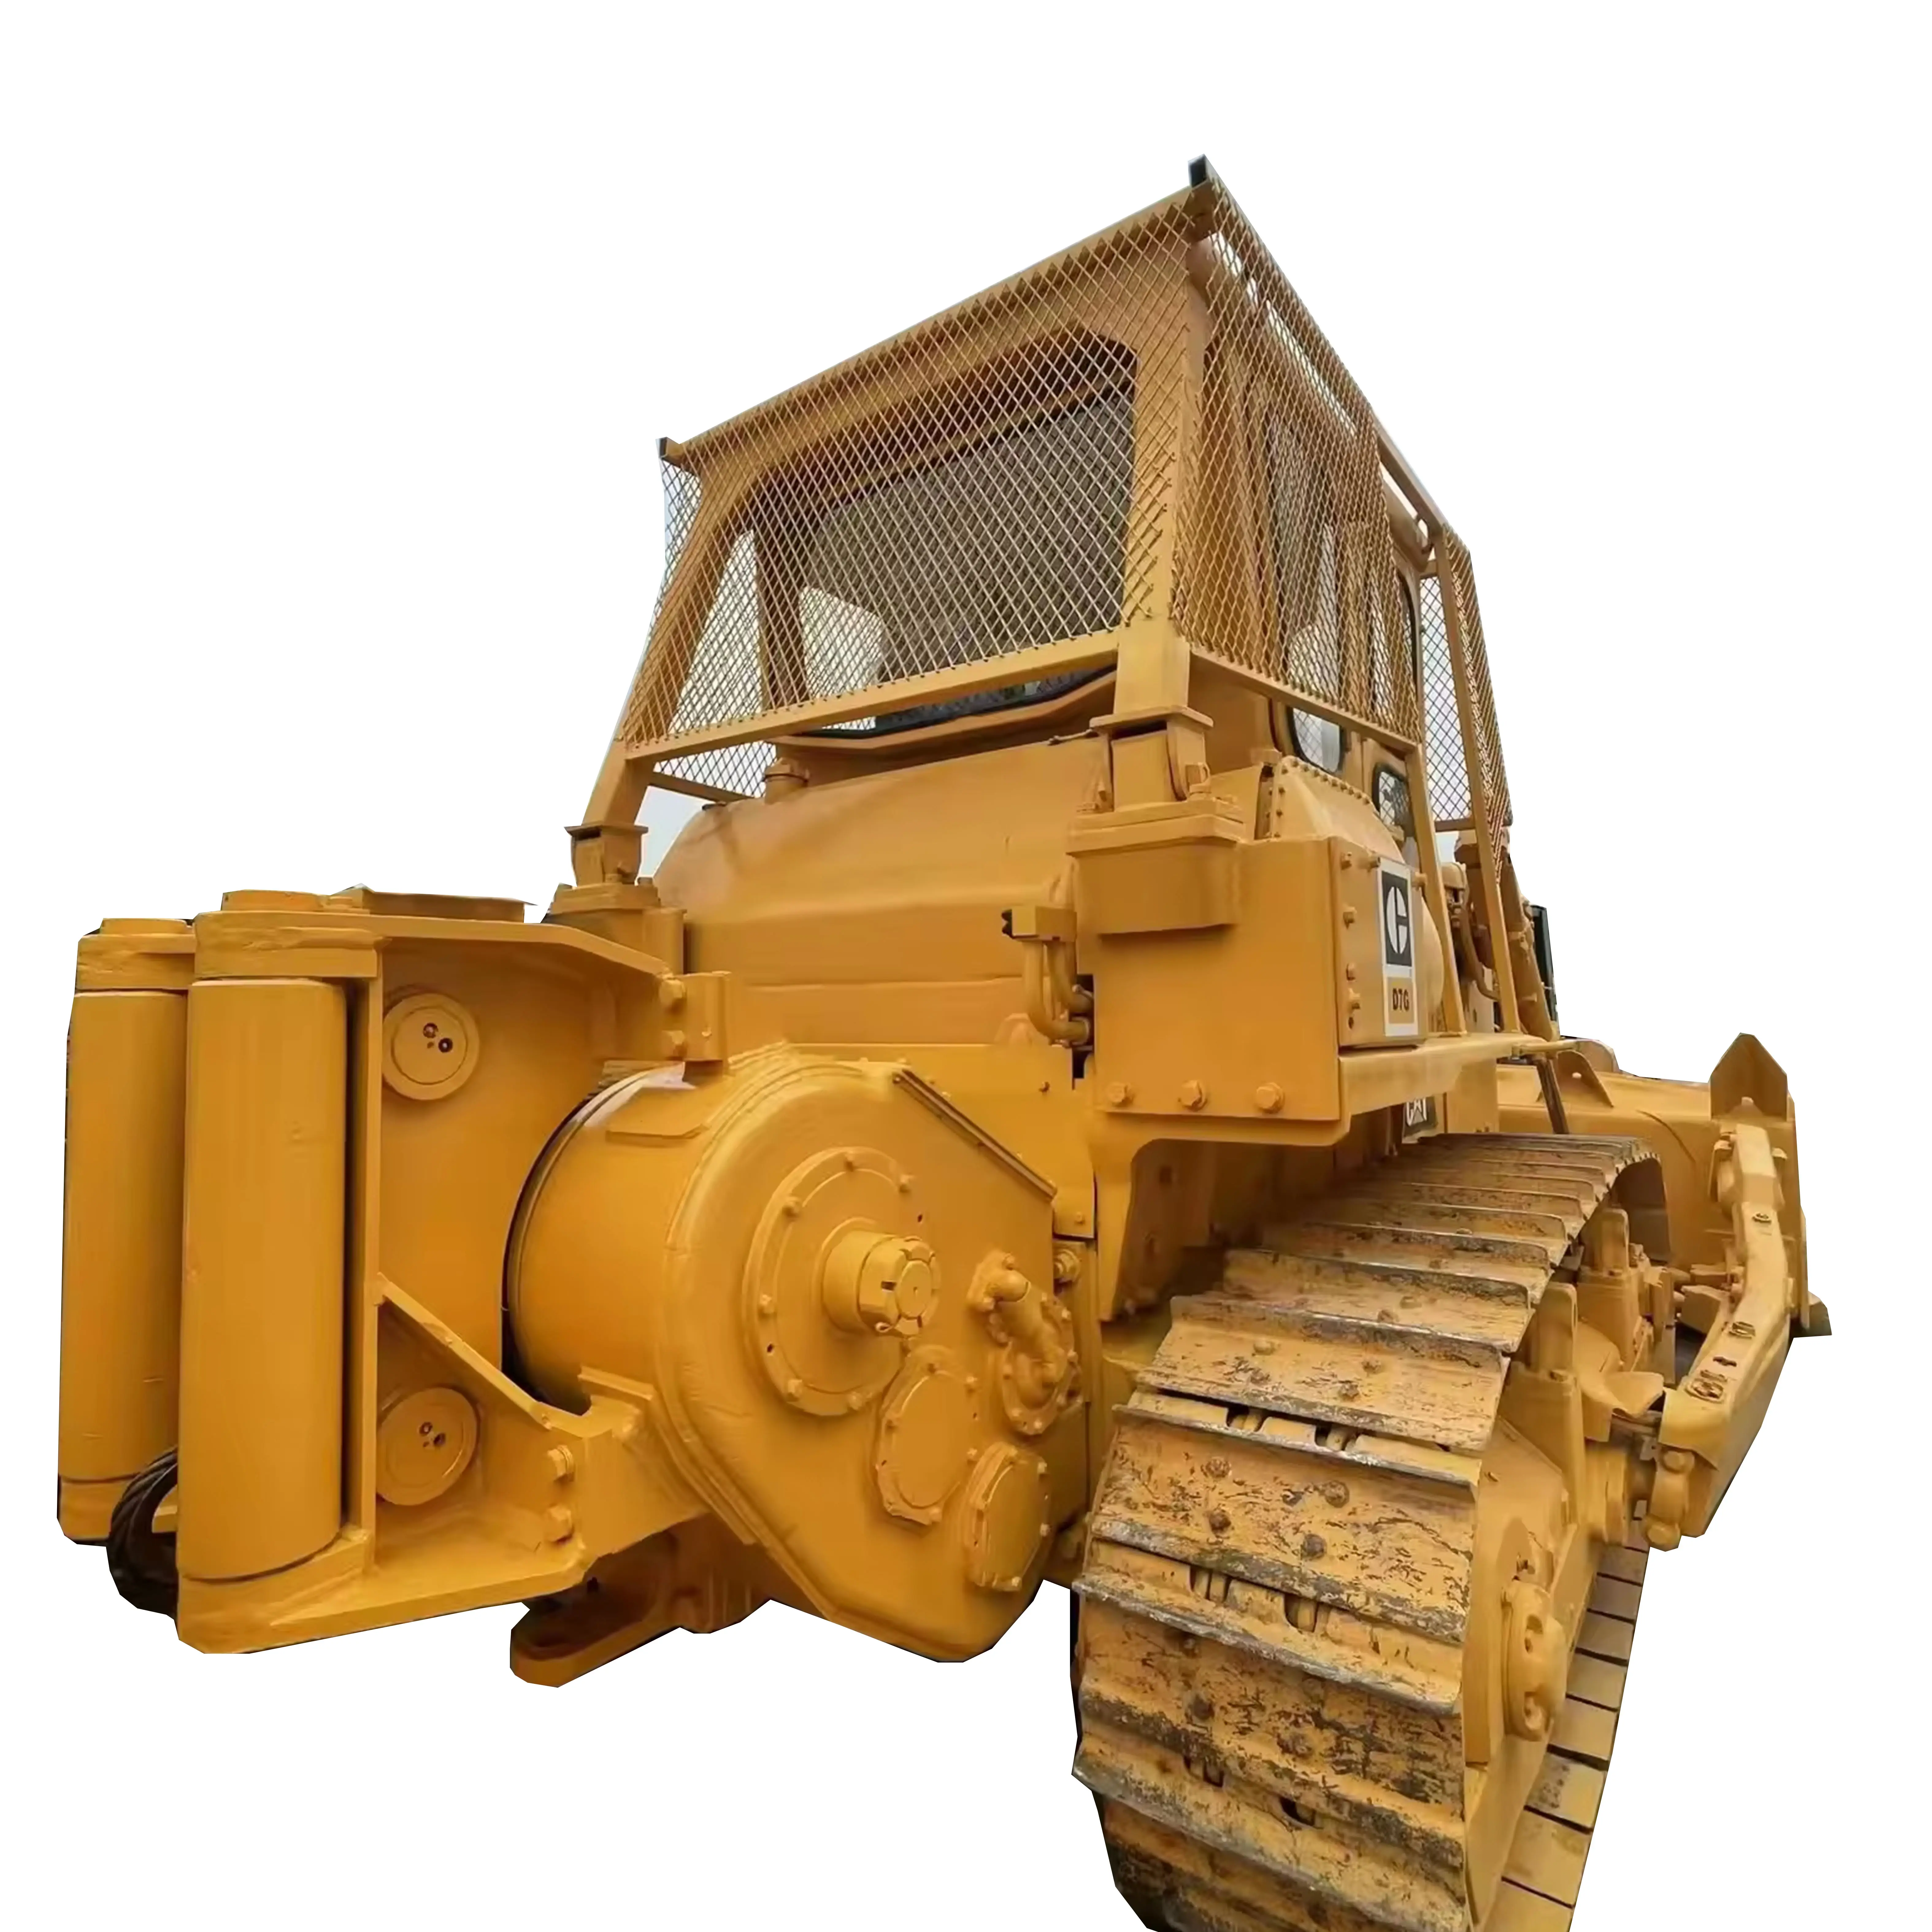 Buone condizioni usate di piccole dimensioni bulldozer cat d4 d5 d6 d7 crawler bulldozer utilizzati CAT D6H D7G bulldozer per la vendita